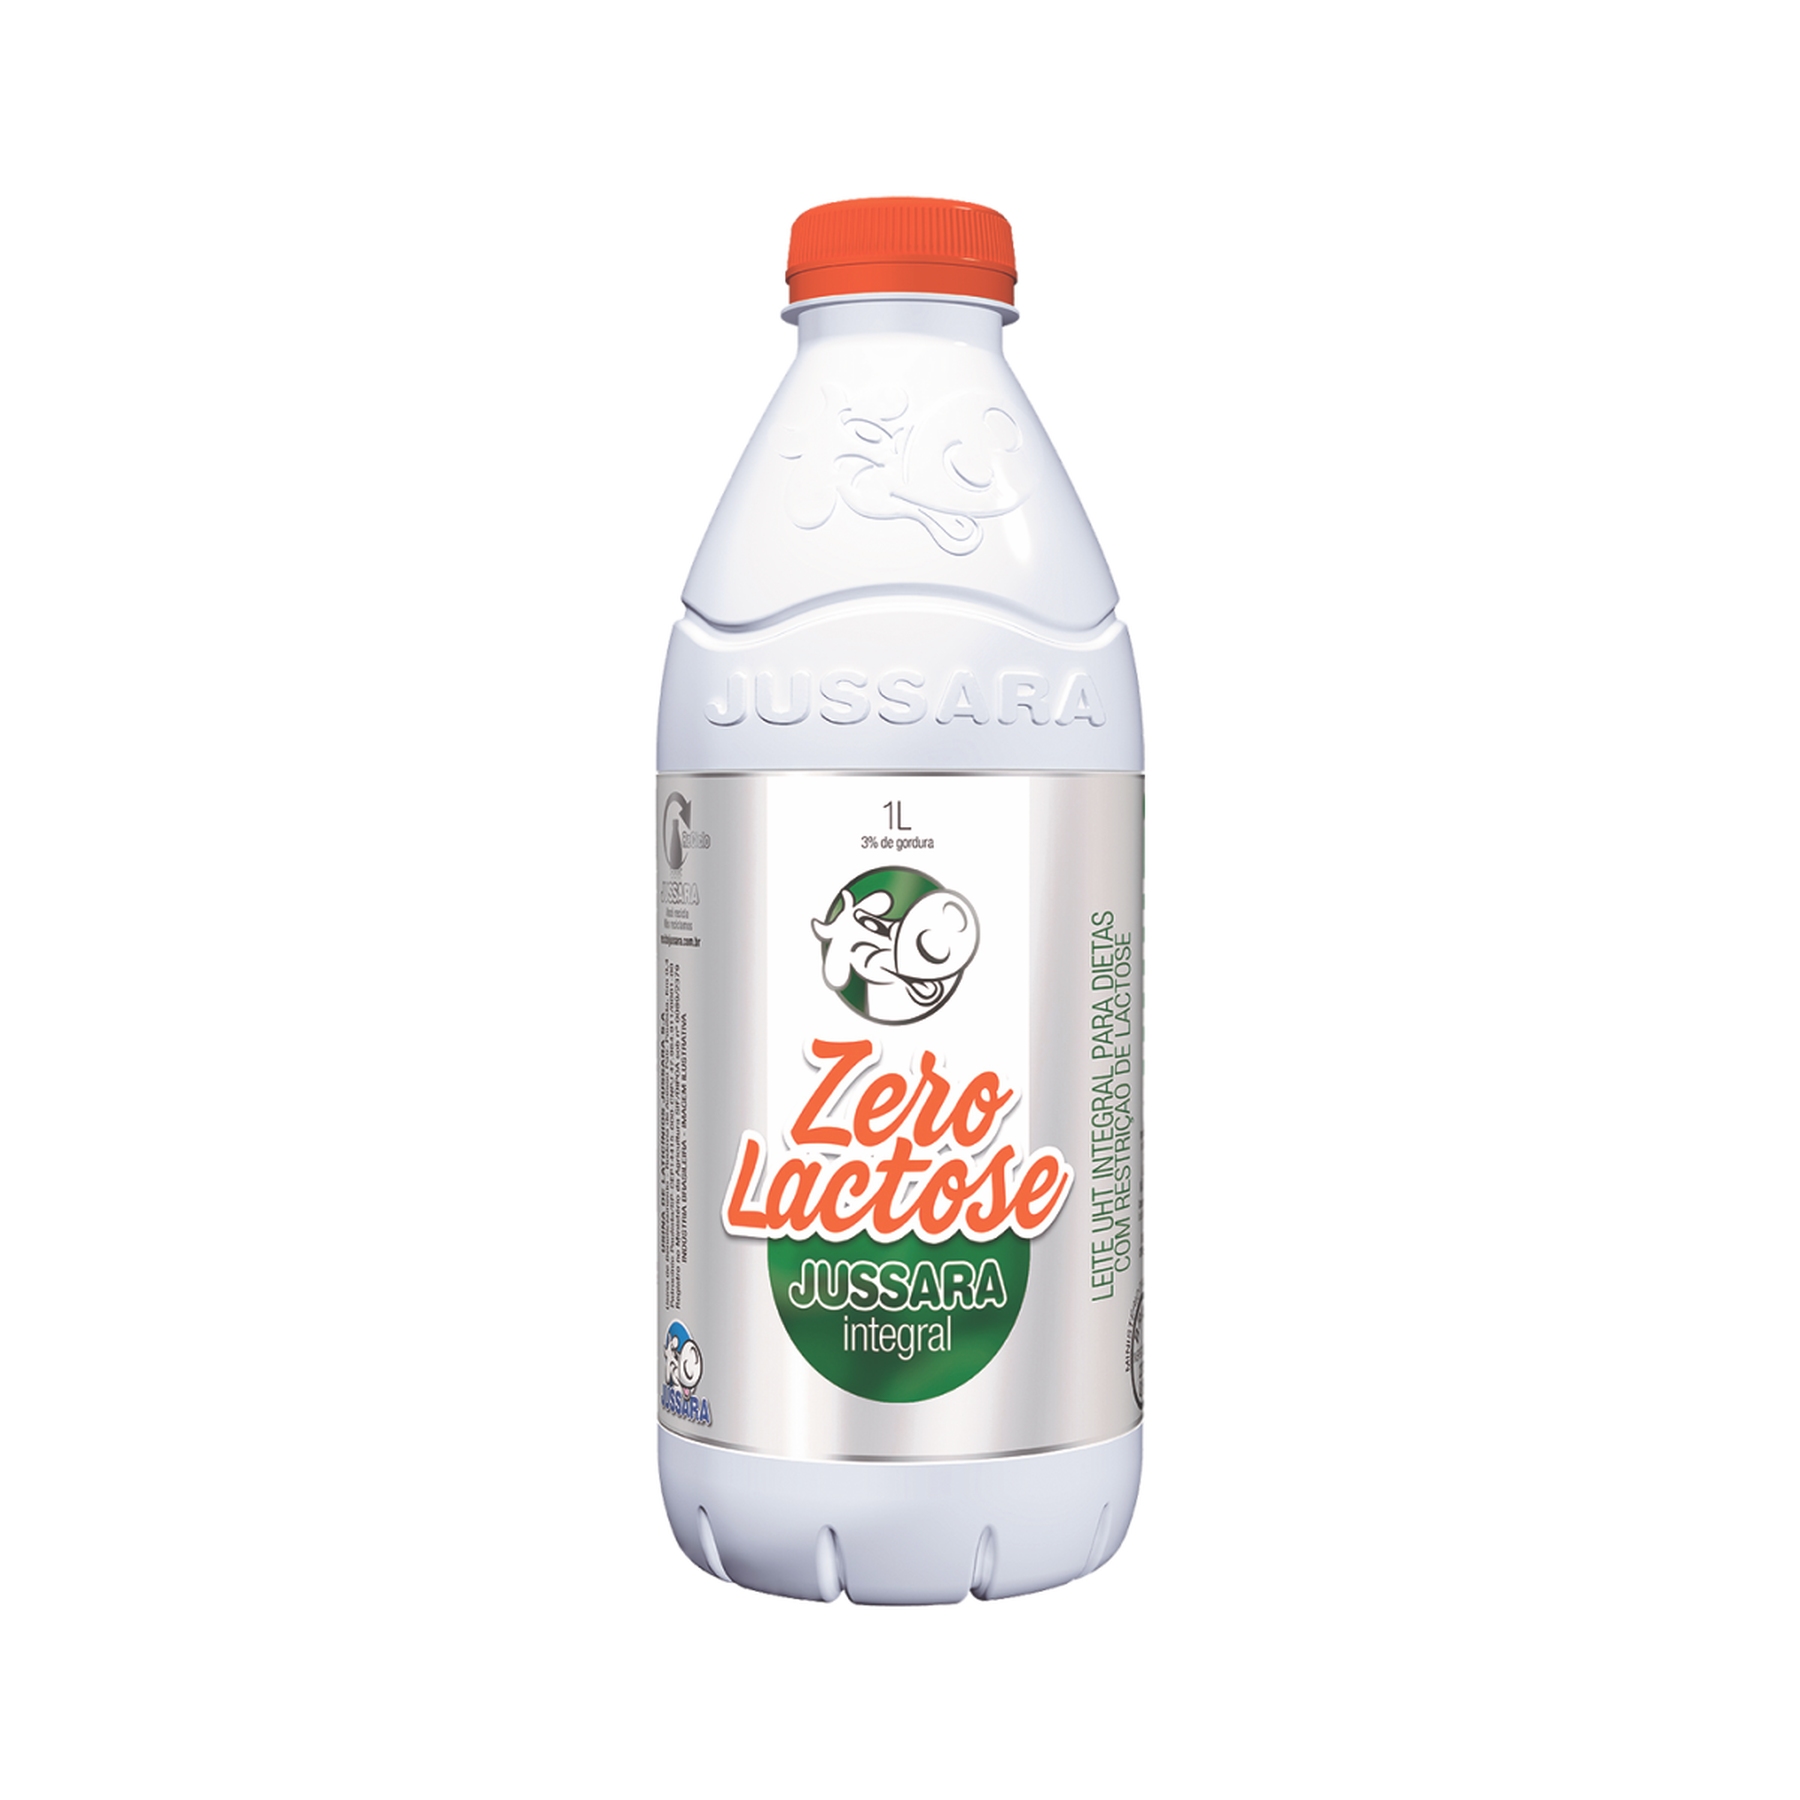 Leite Zero Lactose Jussara Integral Garrafa 1l